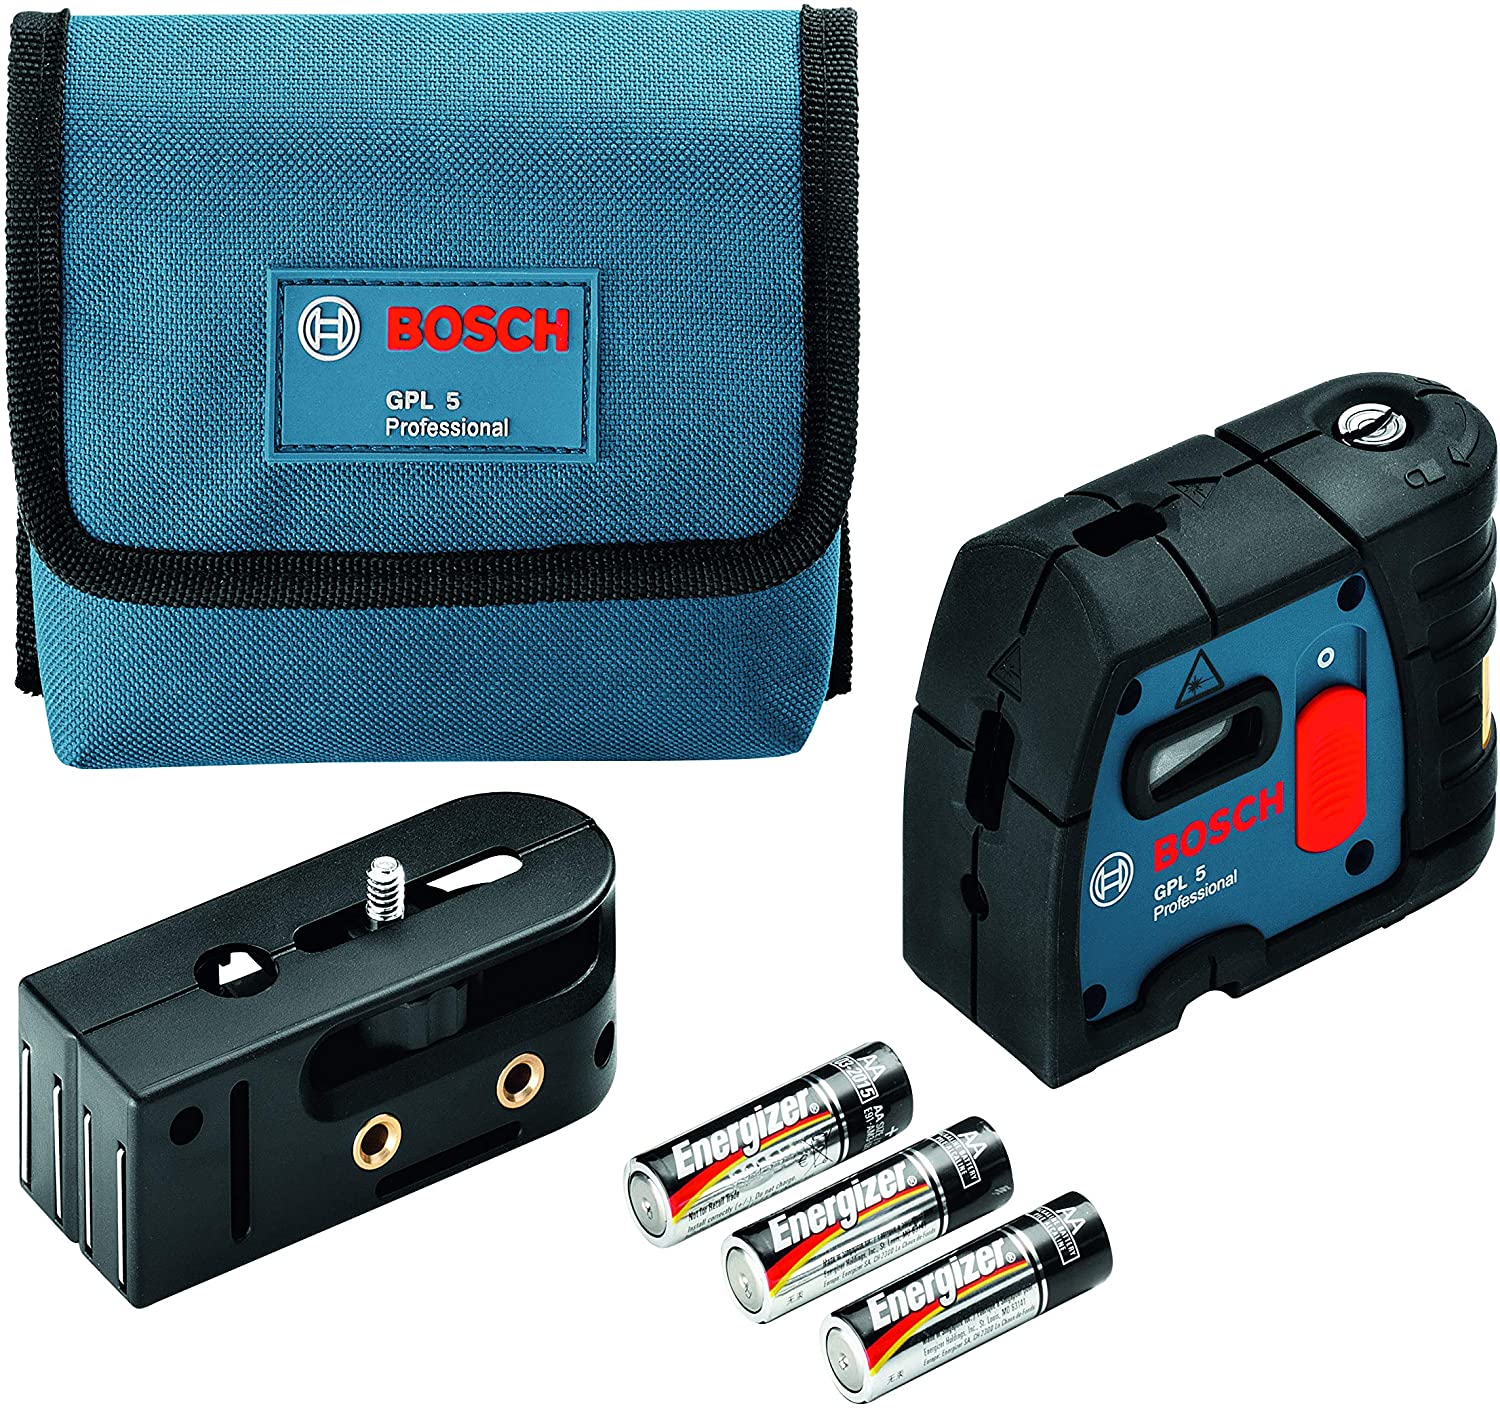 Bosch-láser profesional de 3 puntos GPL 3 G con nivel láser